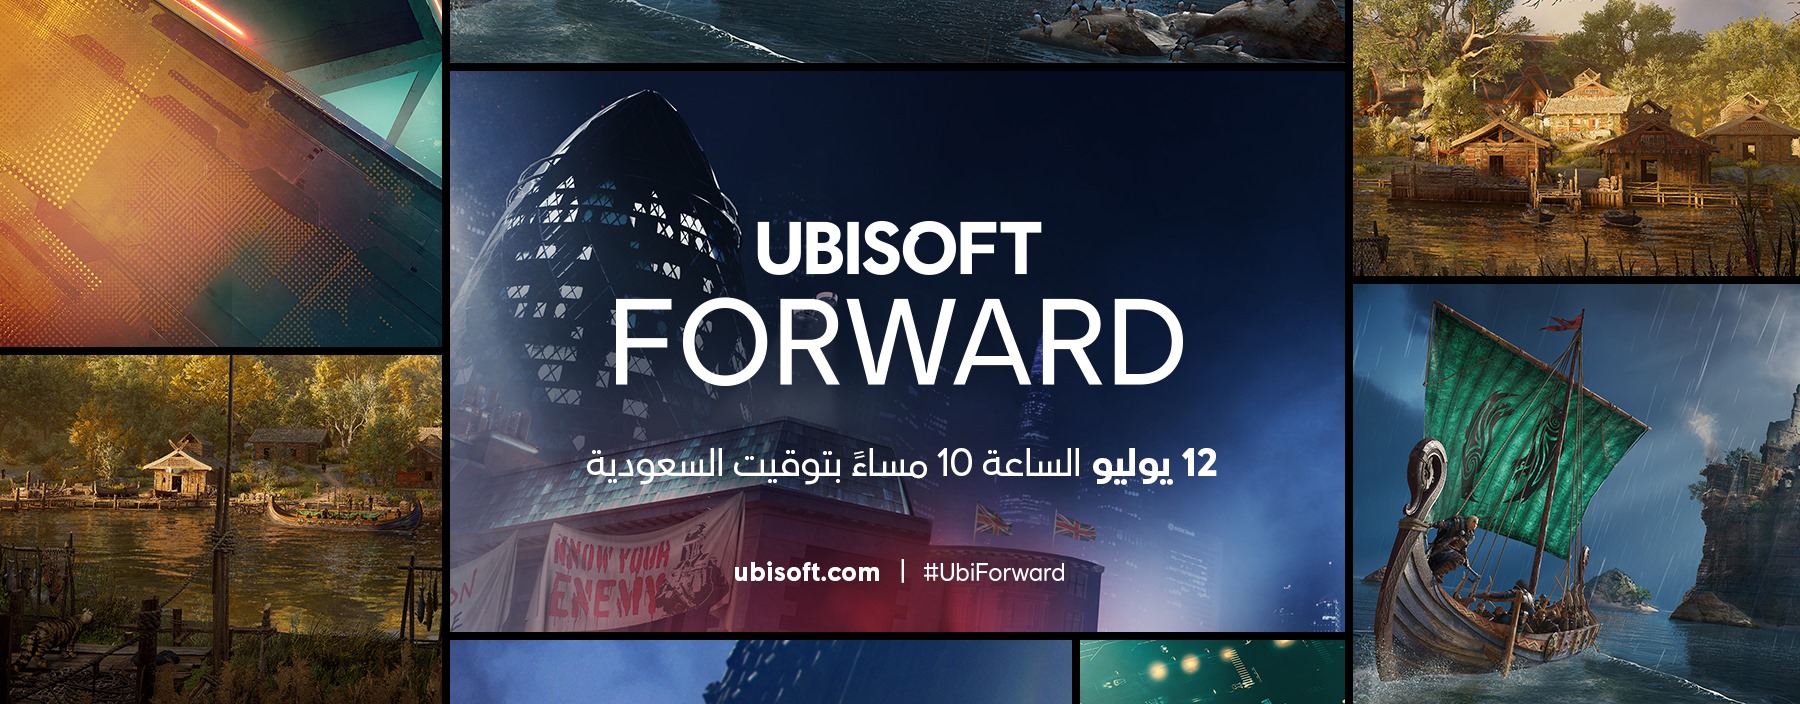 Ubisoft Forward Ubisoft 